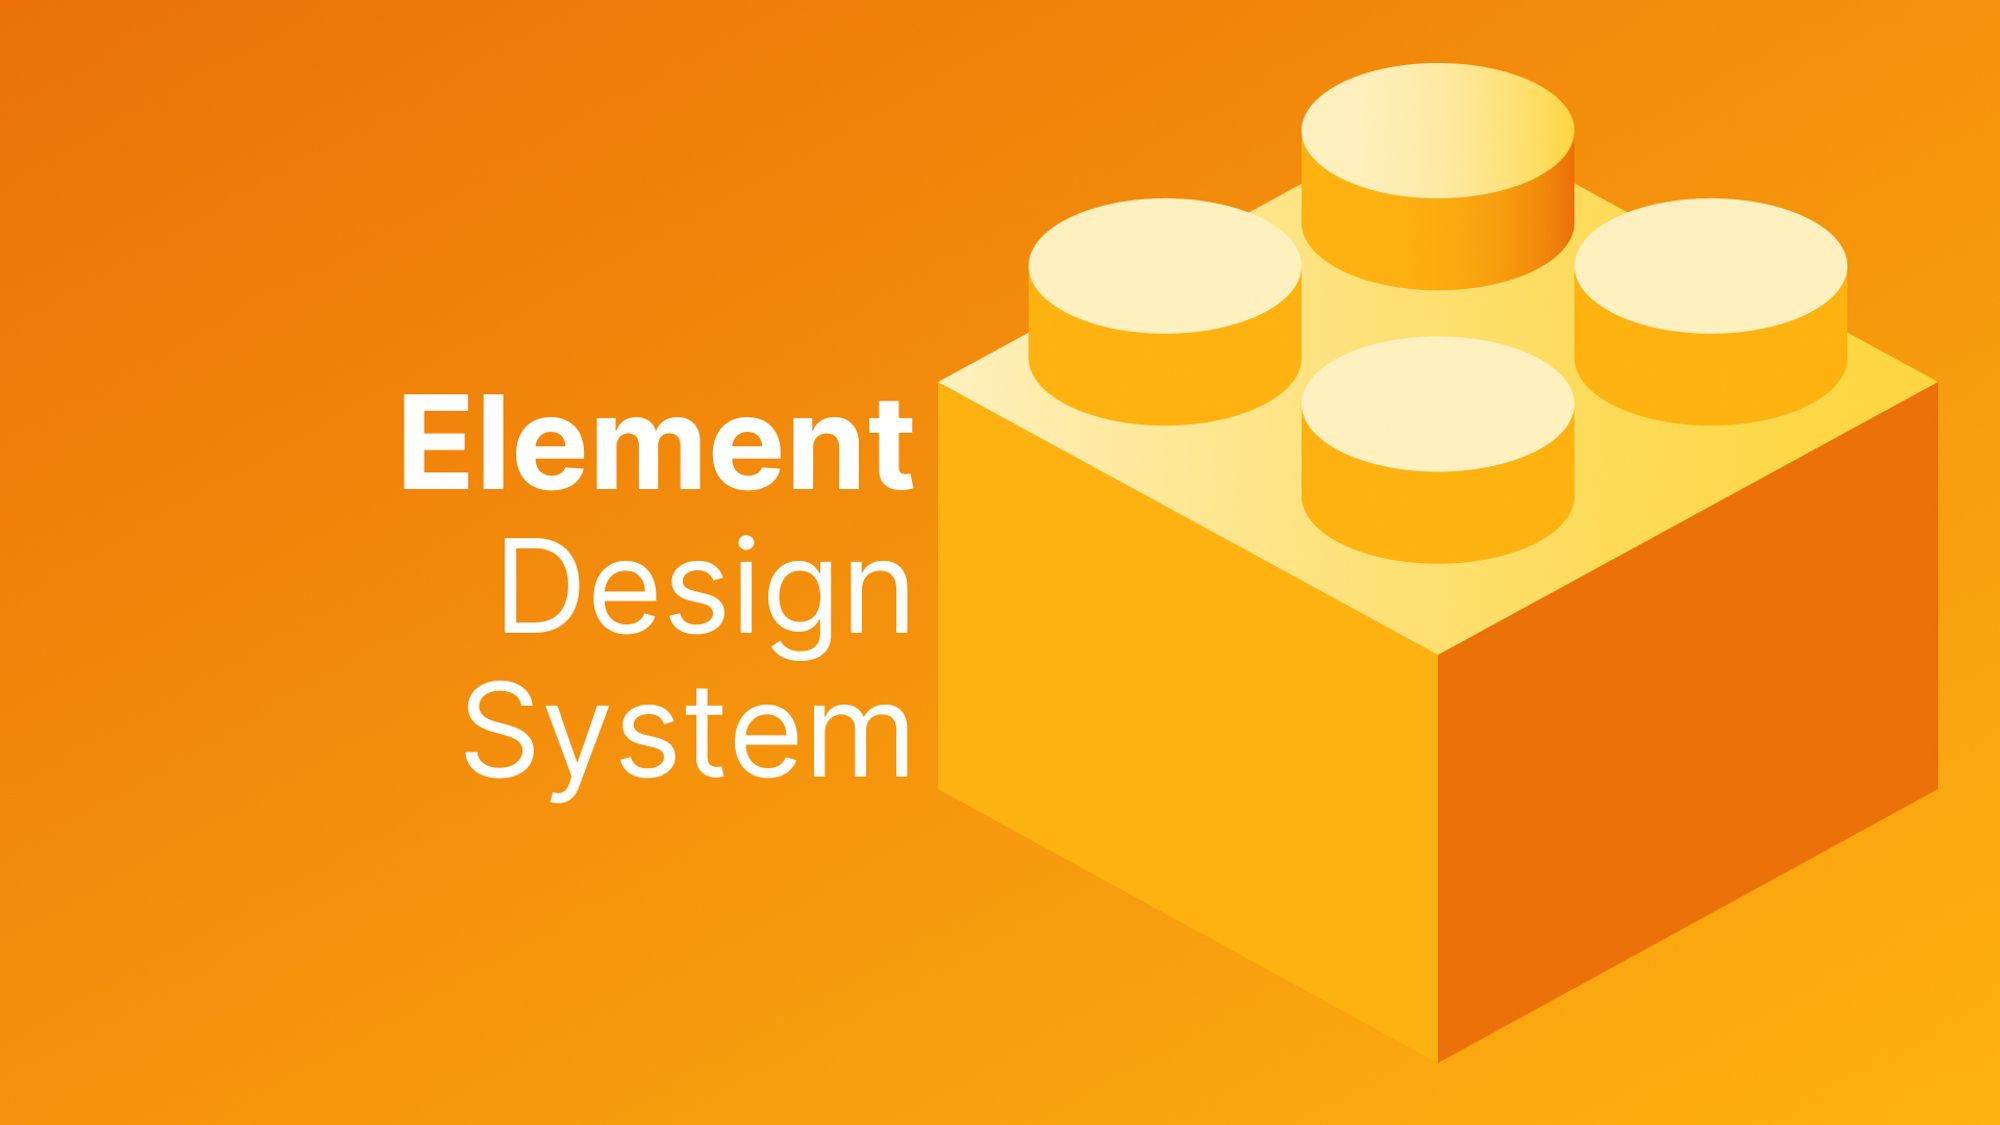 Element Design System